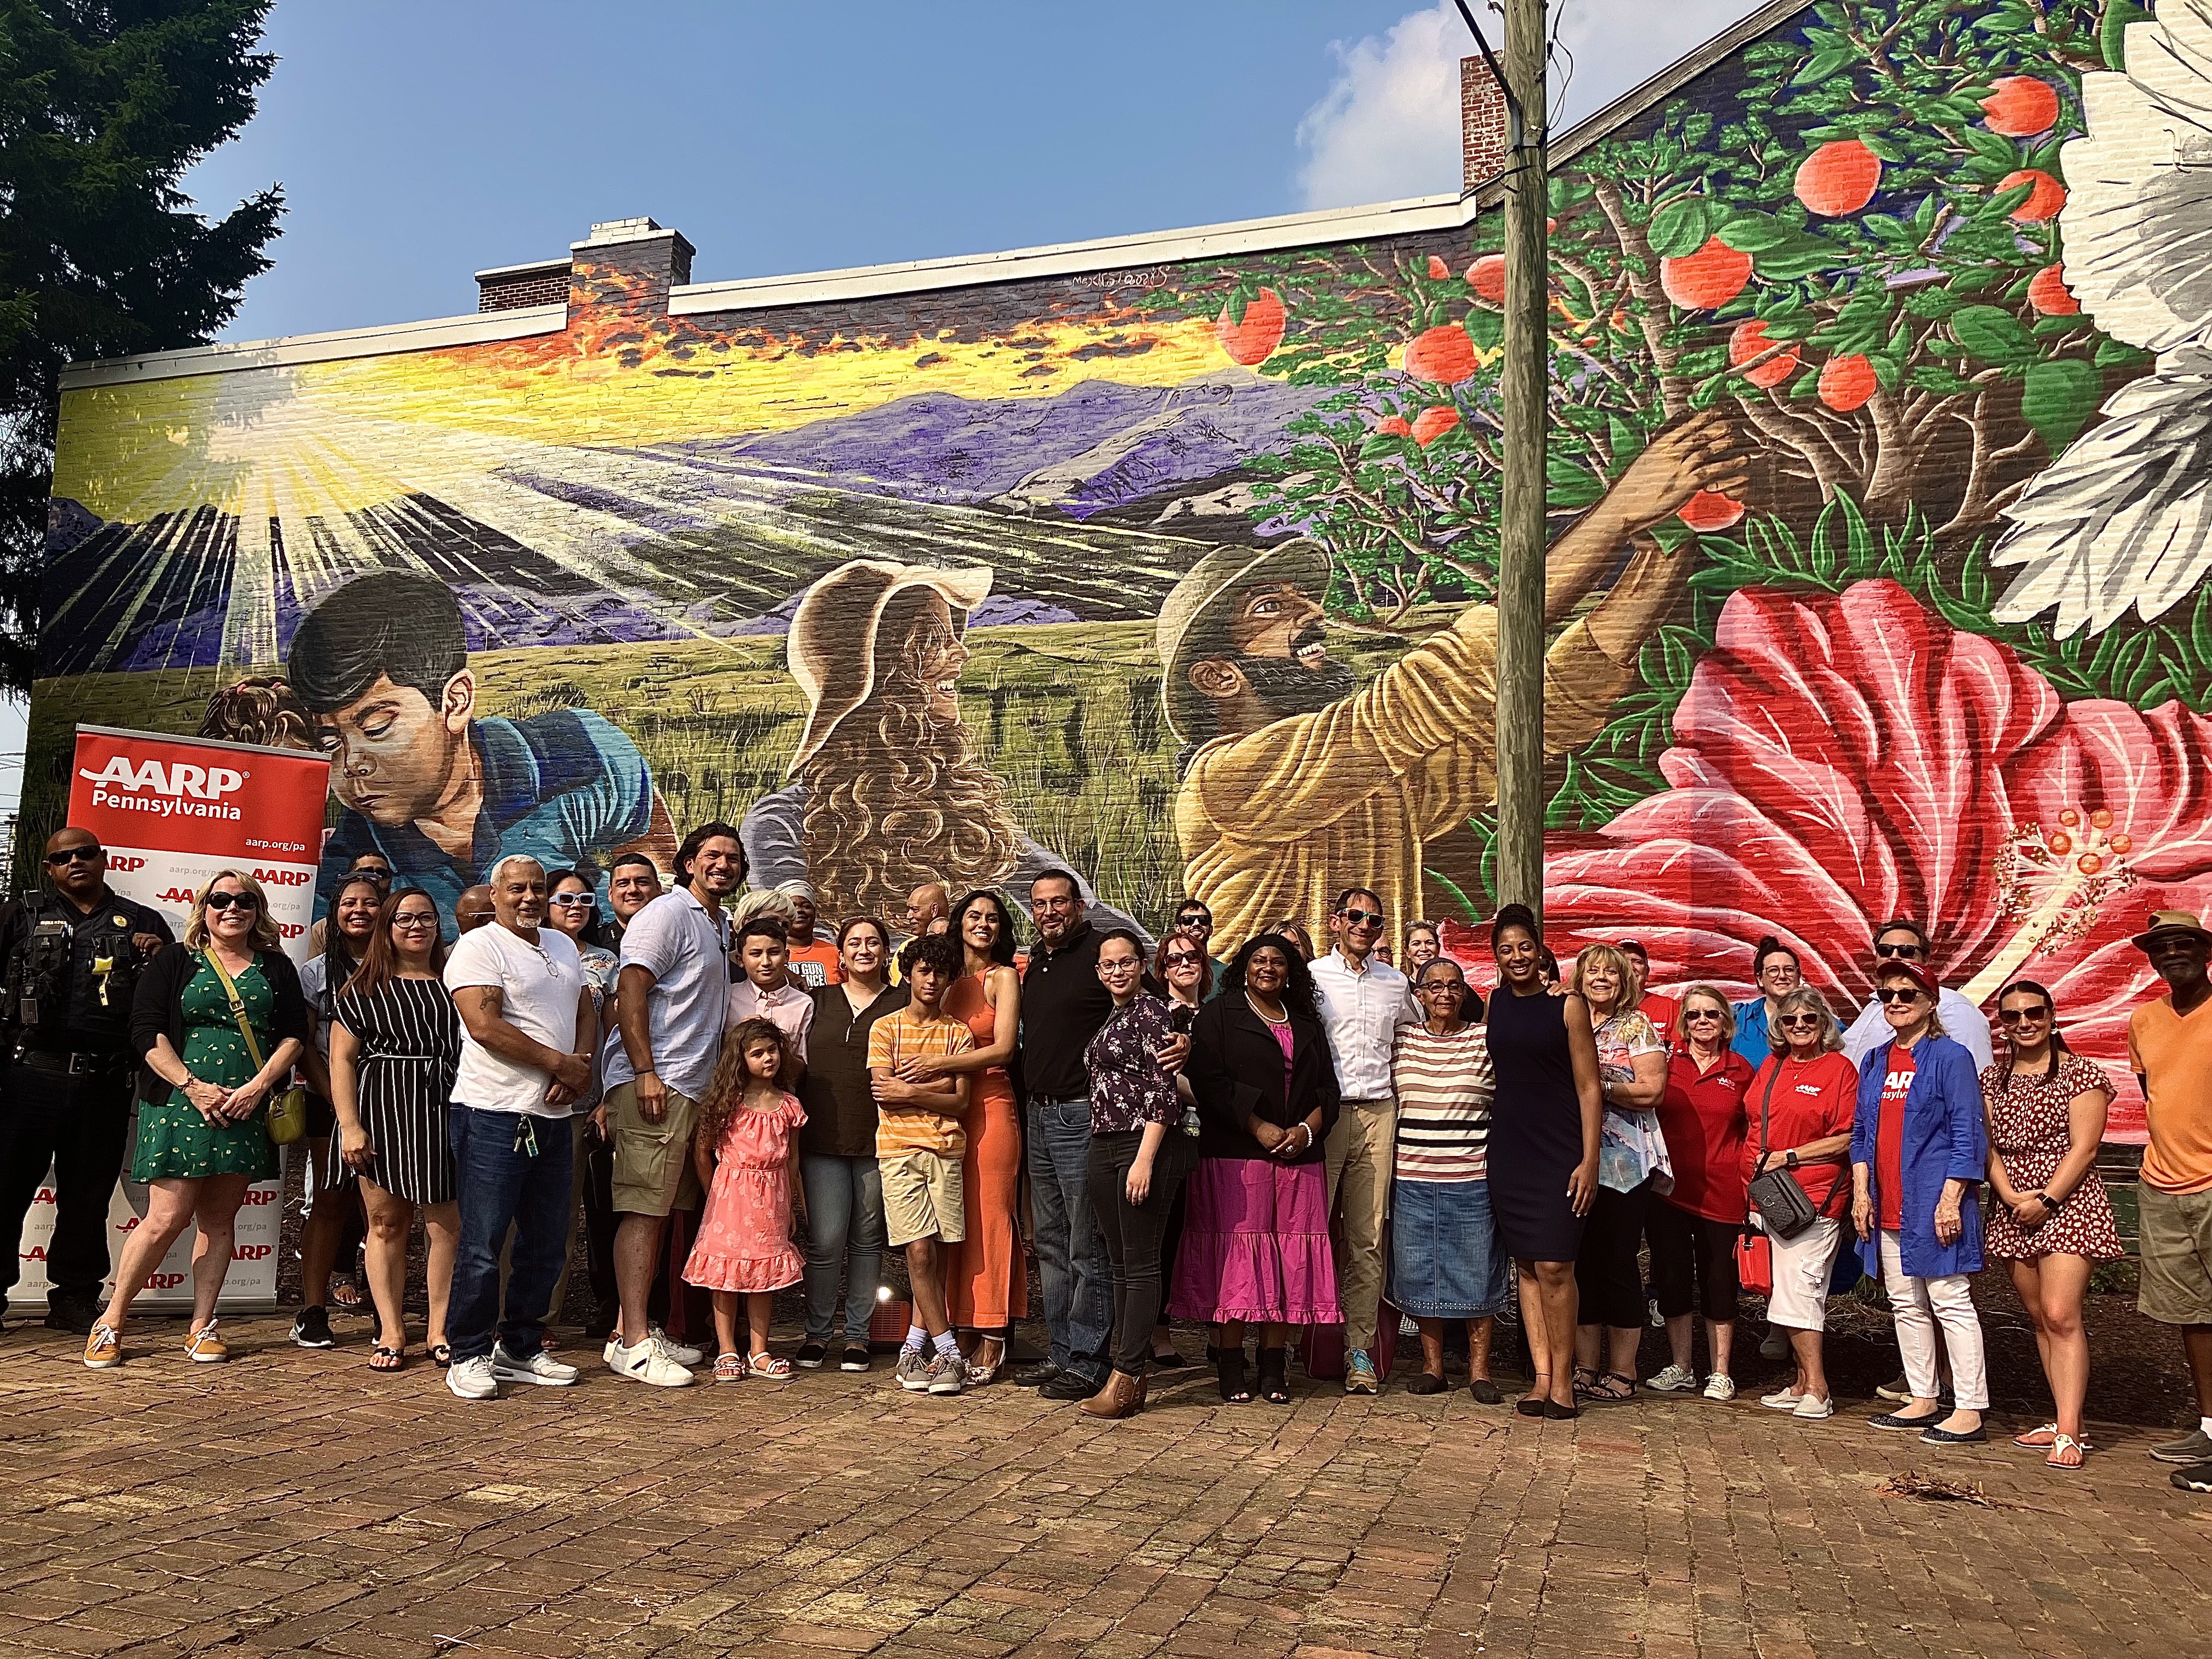 Un artista local asigna un nuevo mural a la colonia First Ward de Allentown en La Playata